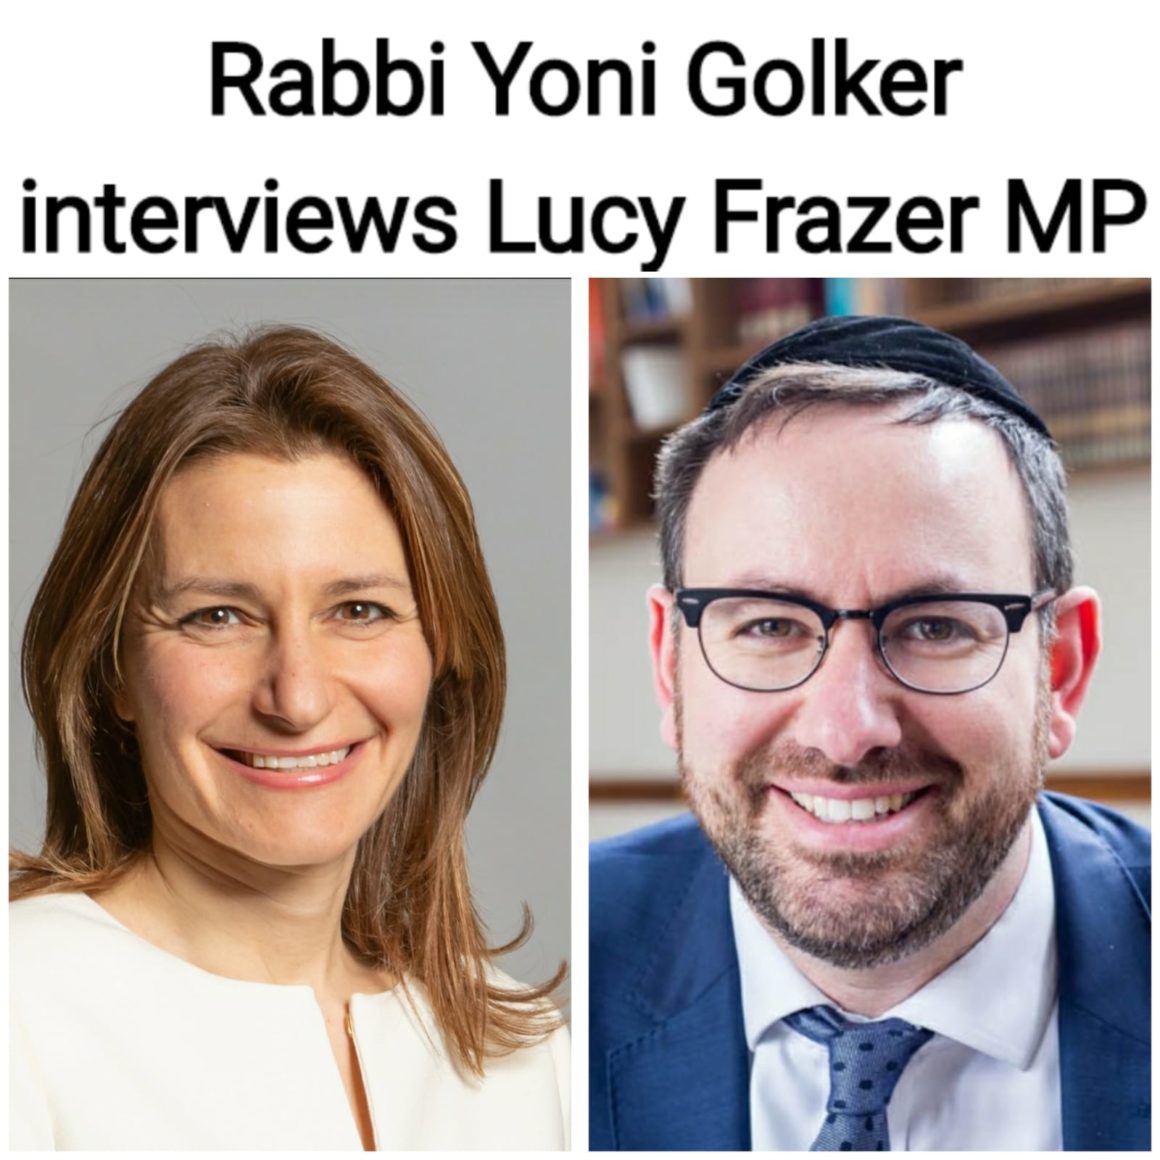 Rabbi Yoni Golker interviews Lucy Frazer MP